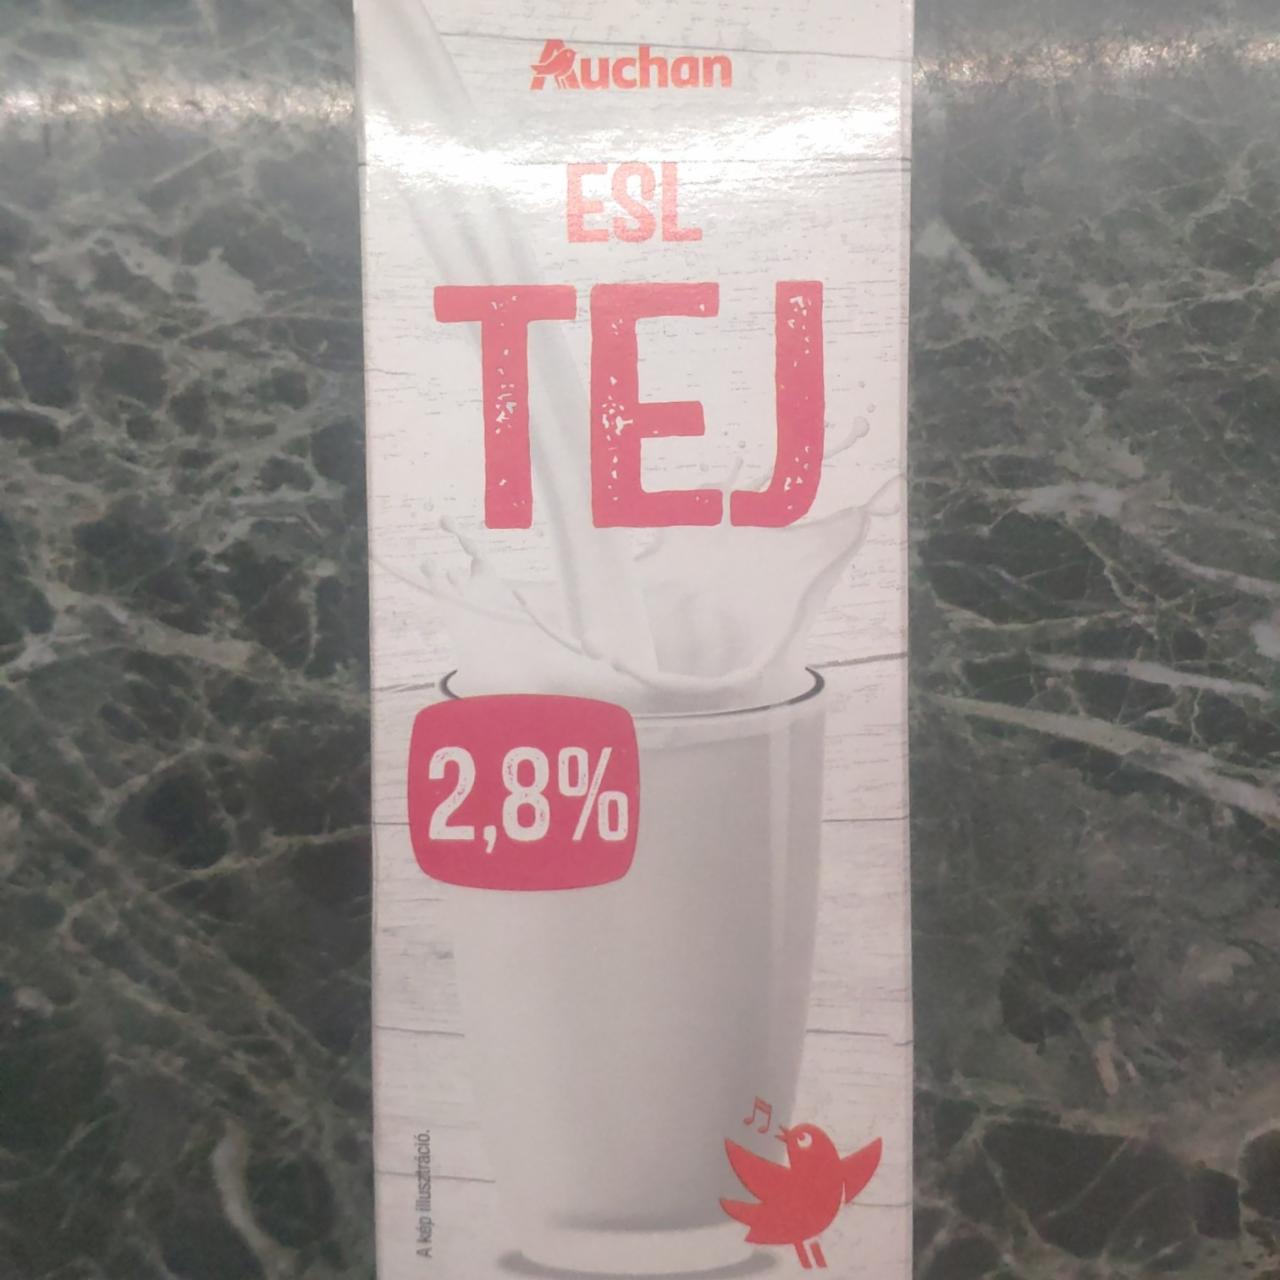 Képek - ESL tej 2,8% Auchan